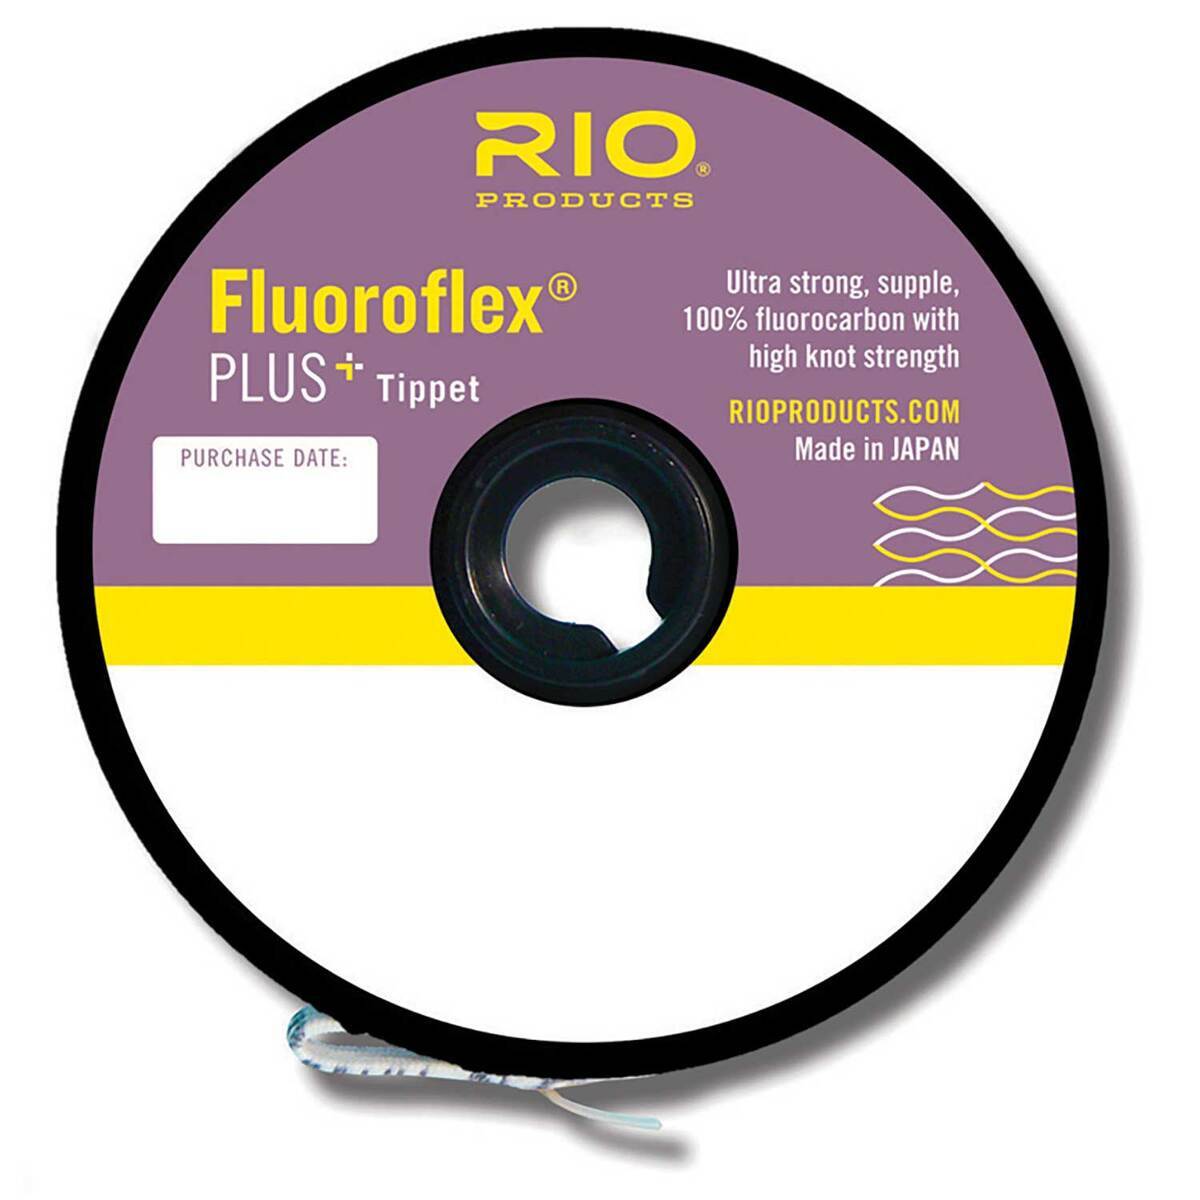 Rio Fluoroflex Strong Fluorocarbon Tippet